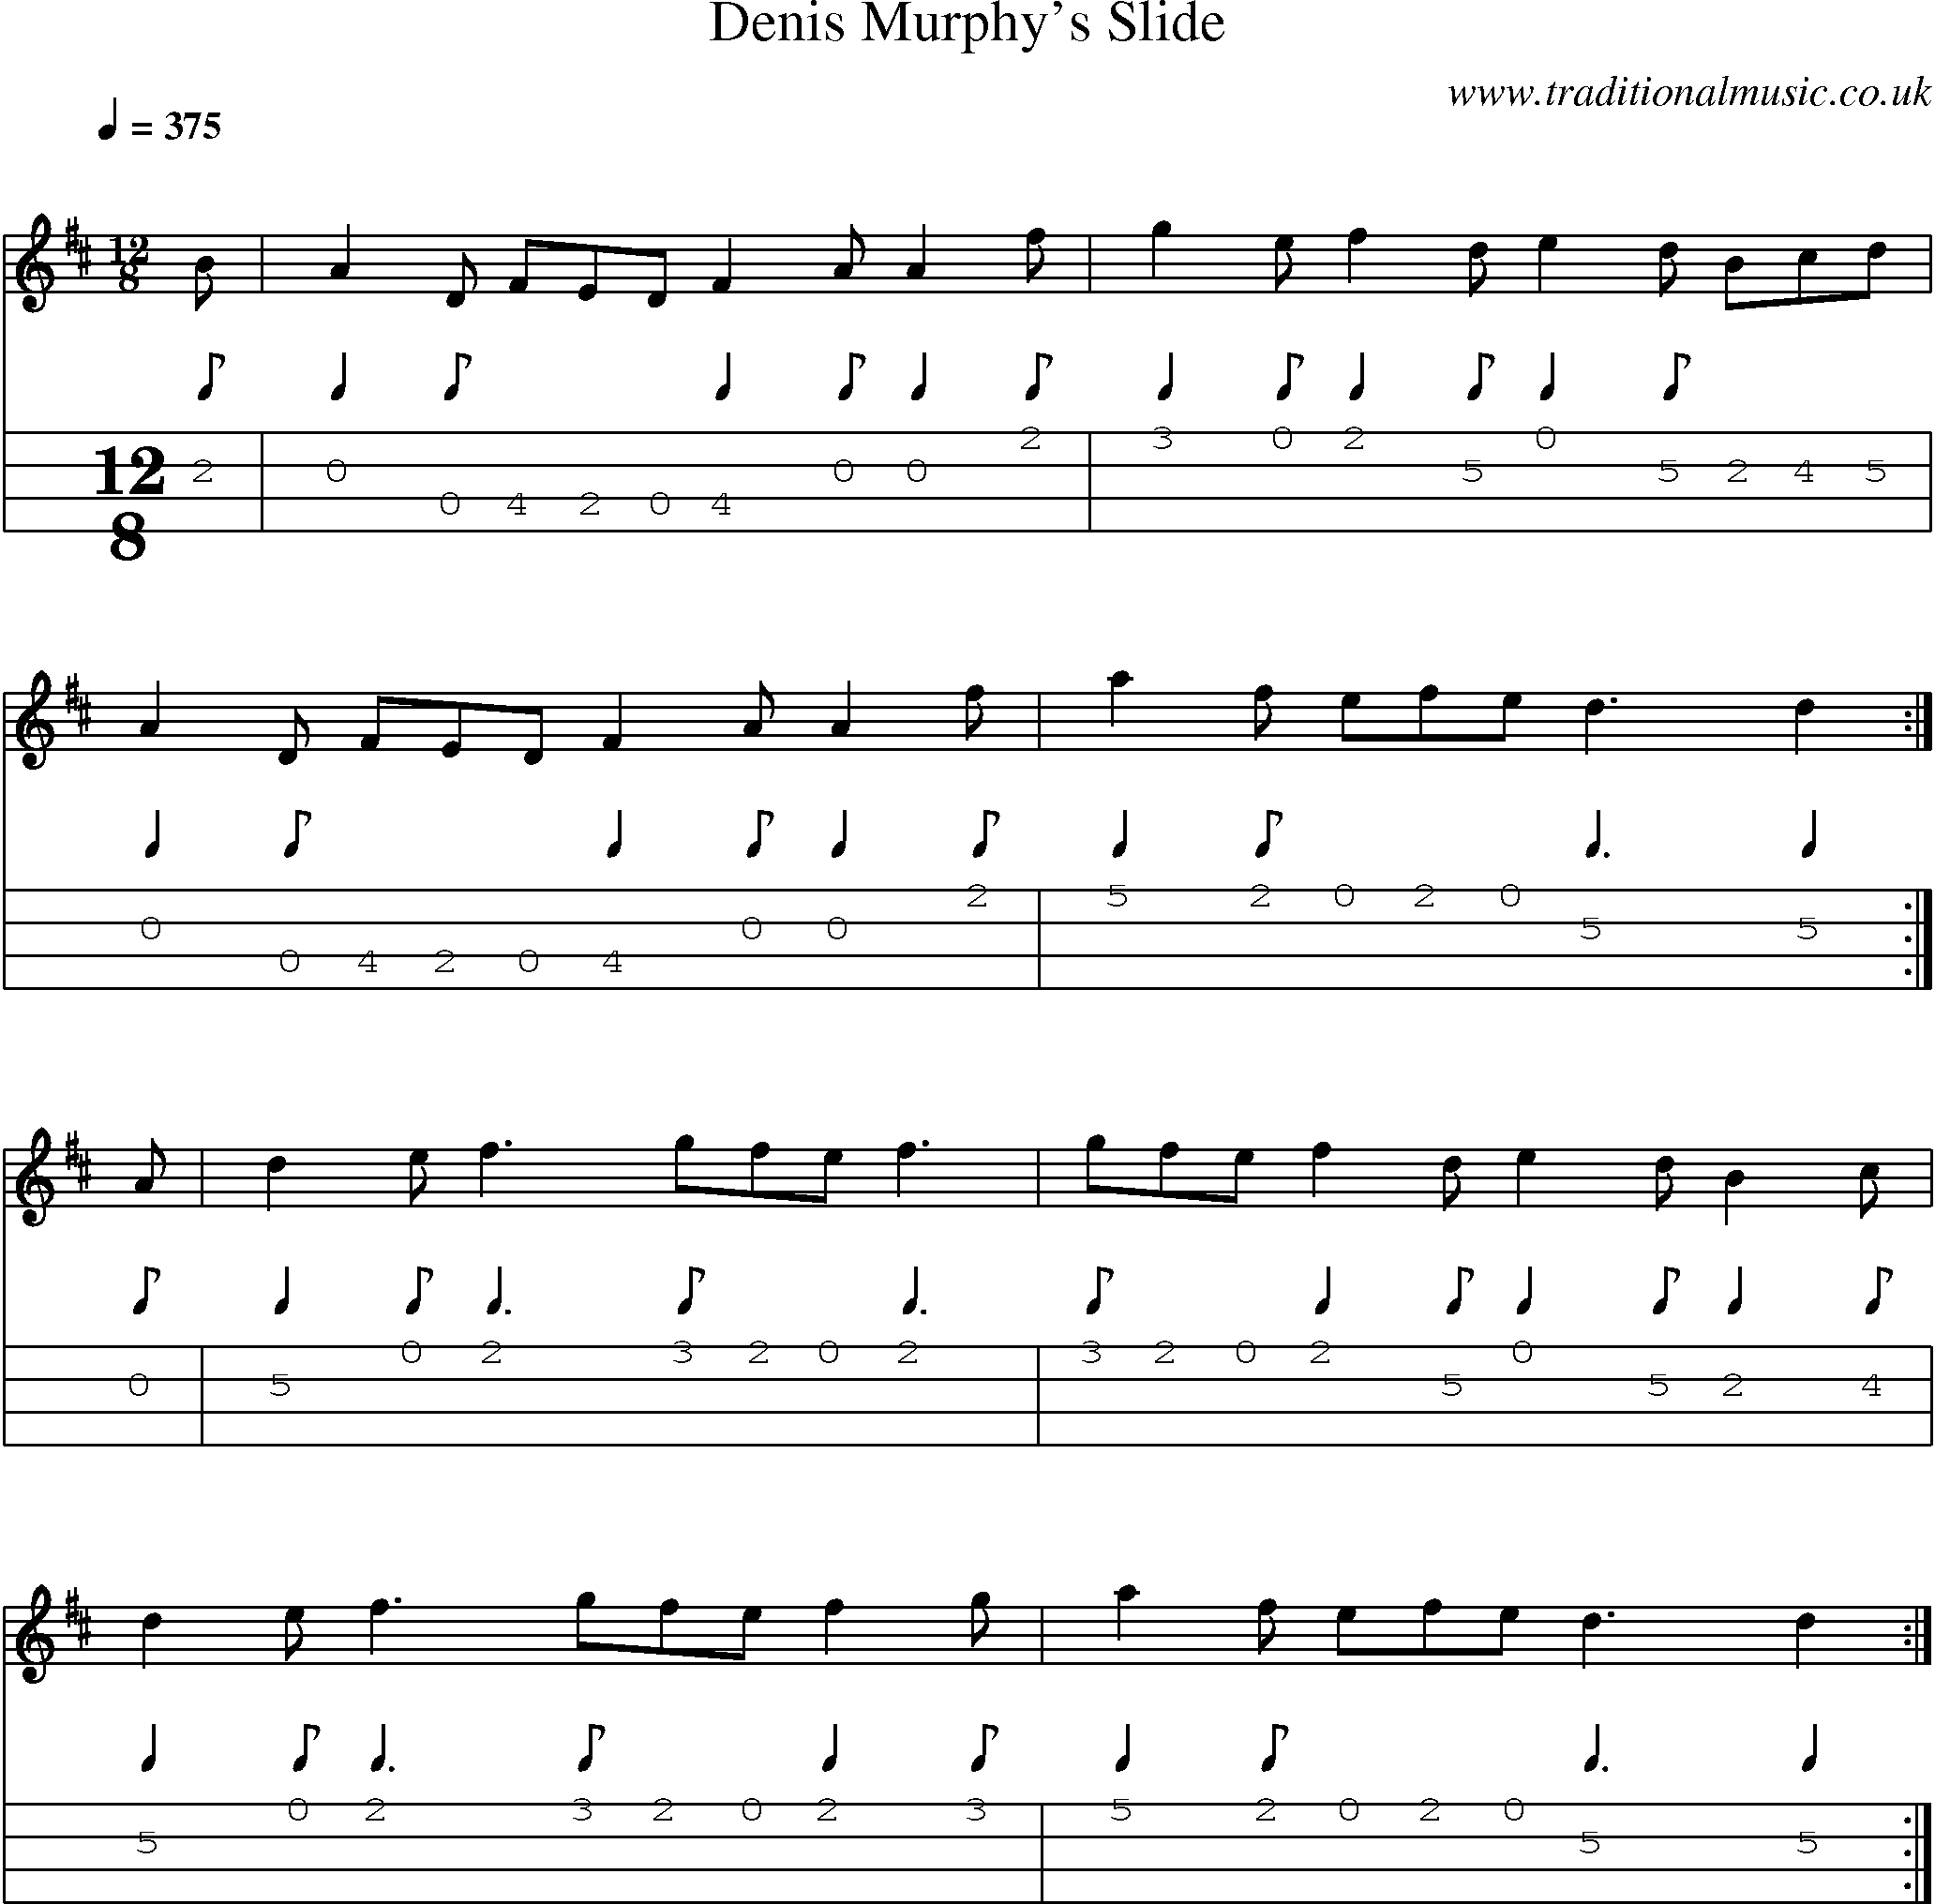 Music Score and Mandolin Tabs for Denis Murphys Slide